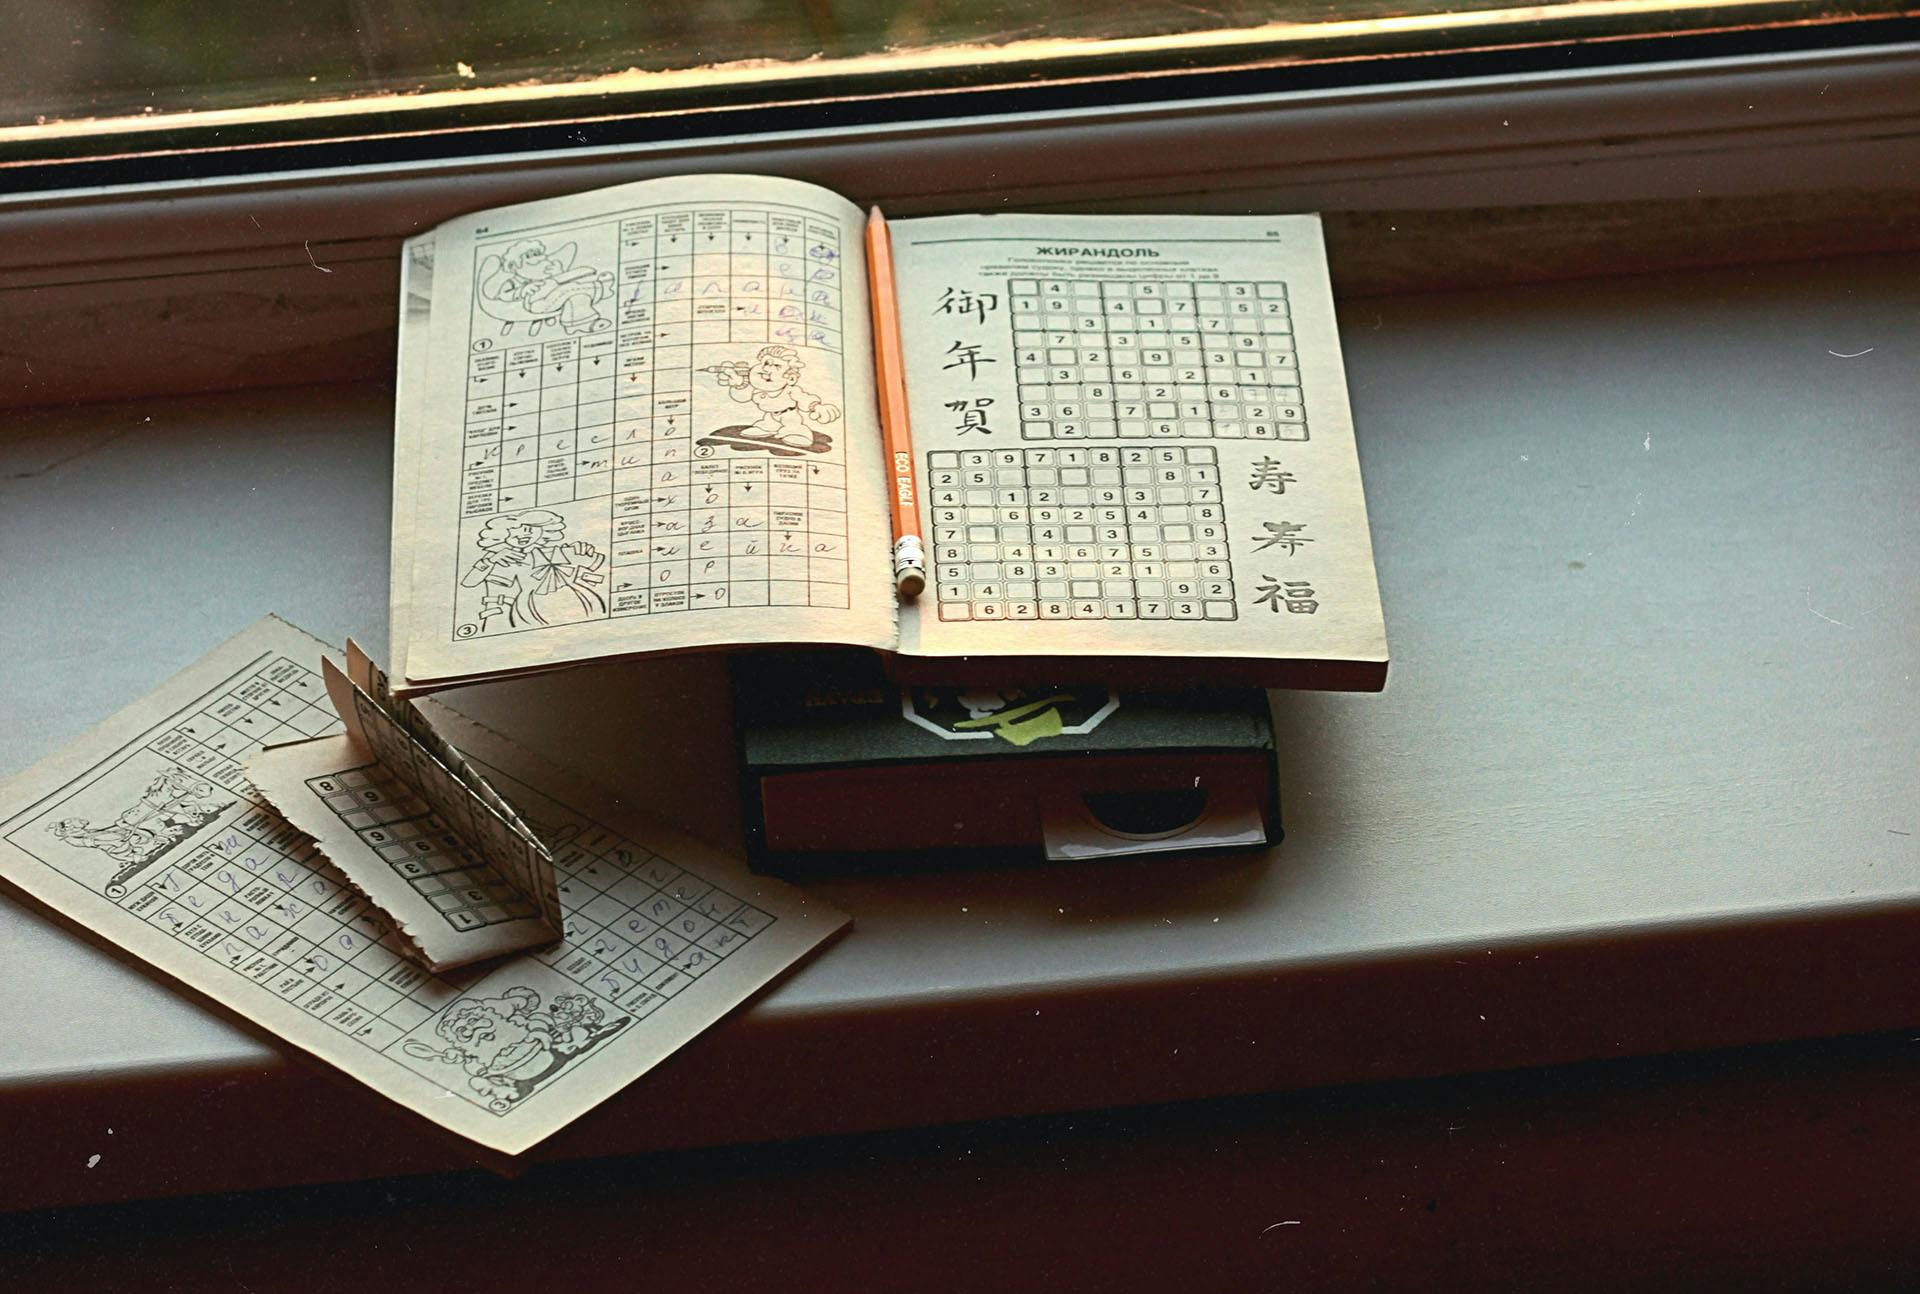 Résoudre et générer un sudoku avec backtracking & récusion